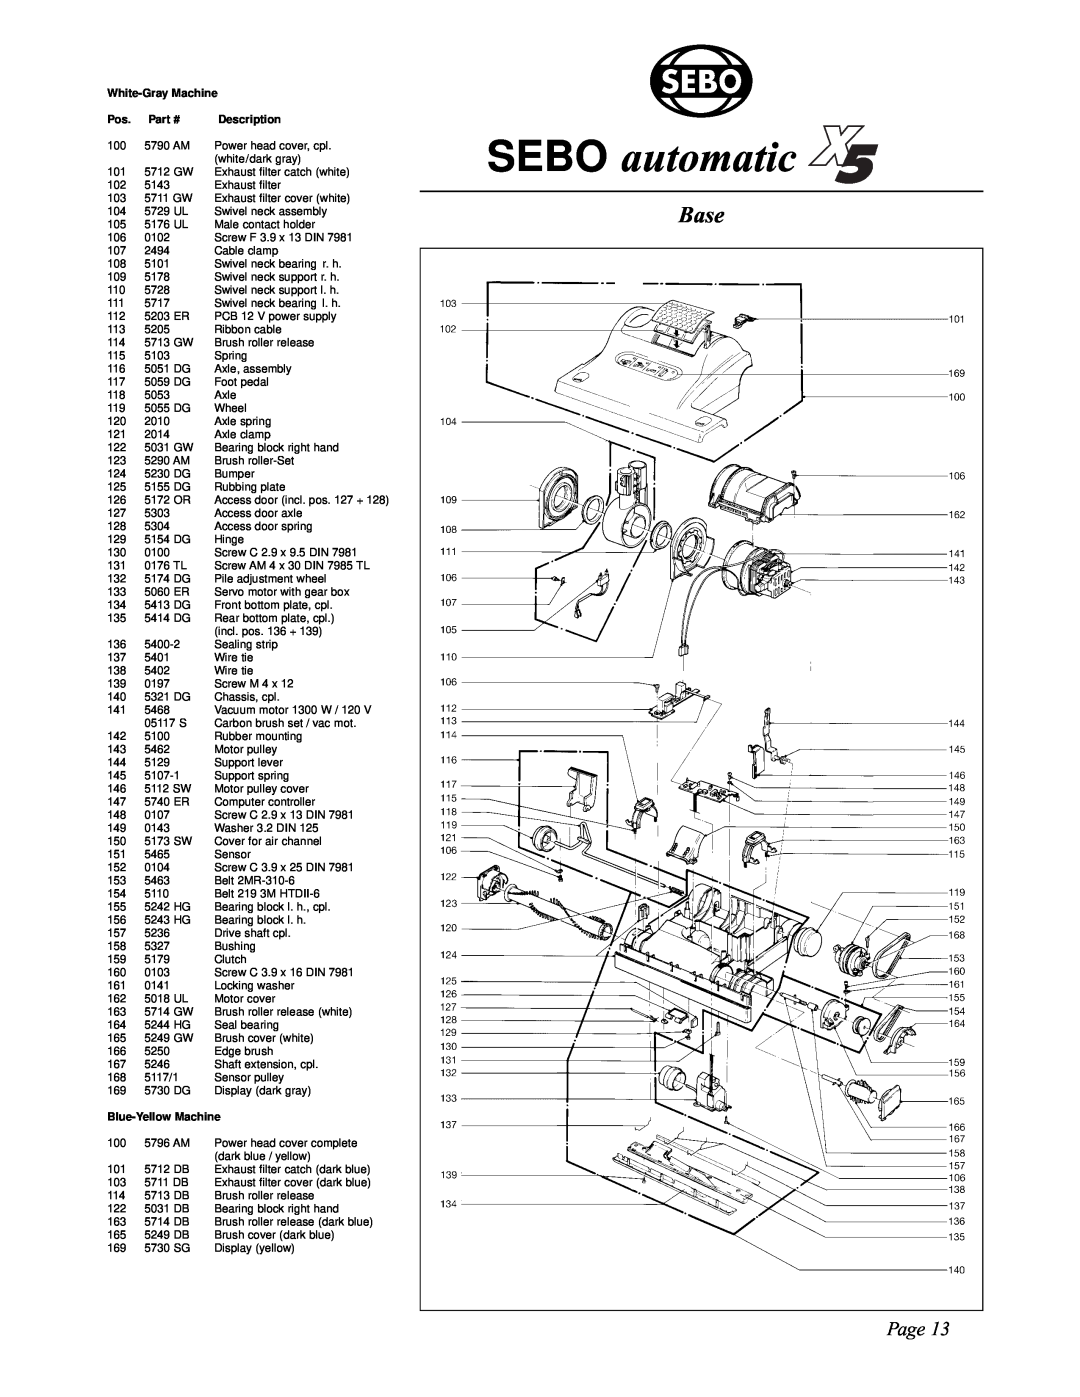 Sebo X4, X5 manual SEBO automatic, Base, Page, White-GrayMachine, Description, Blue-YellowMachine 